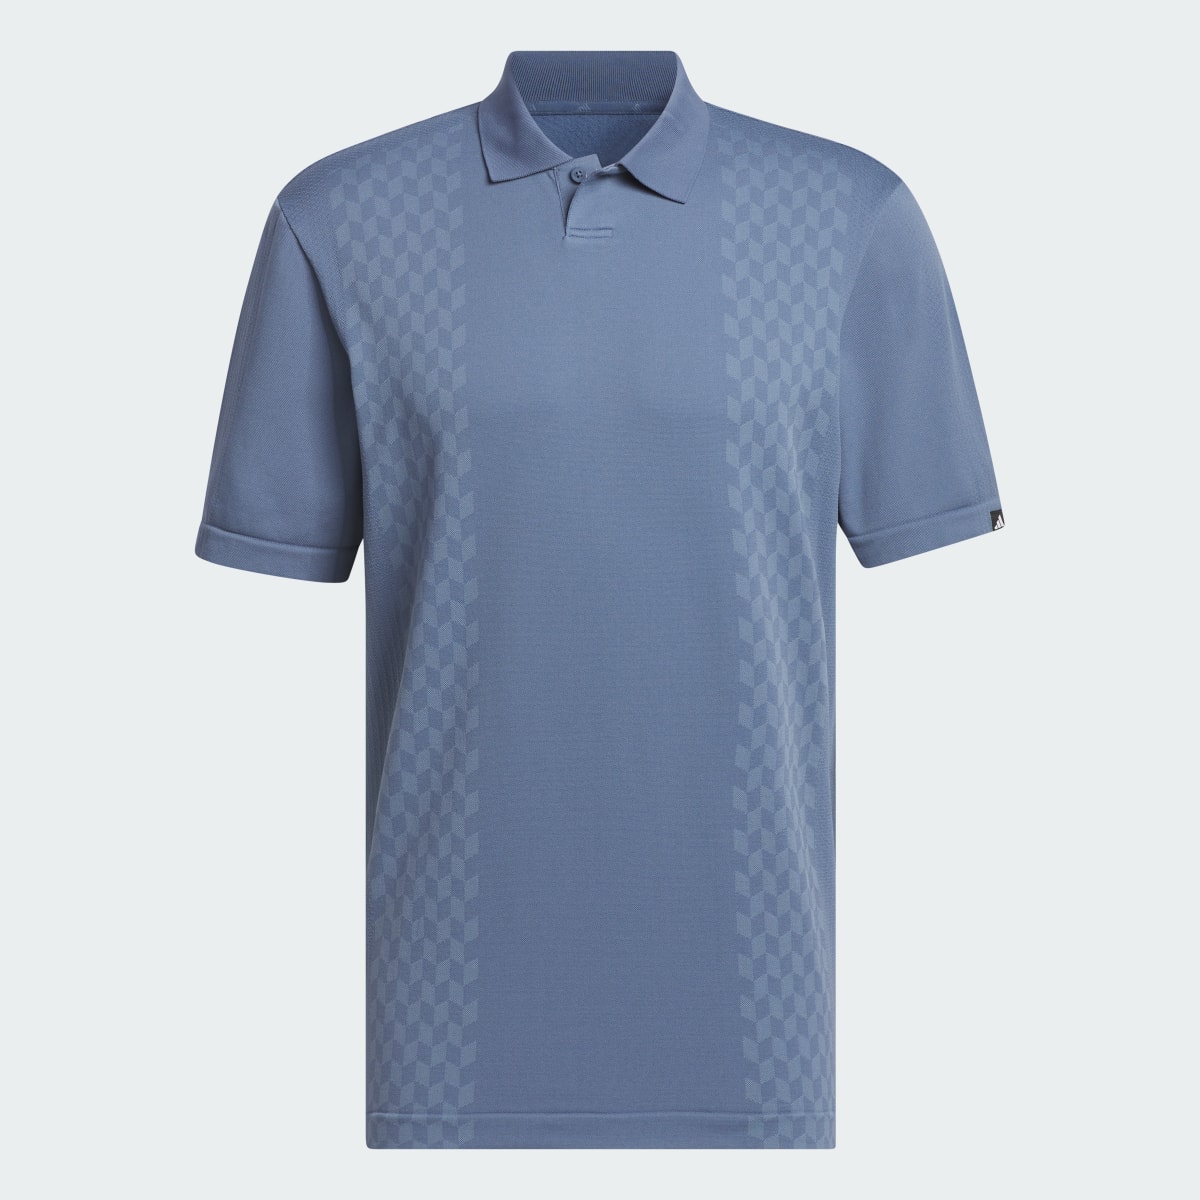 Adidas Koszulka Ultimate365 Tour Primeknit Polo. 5